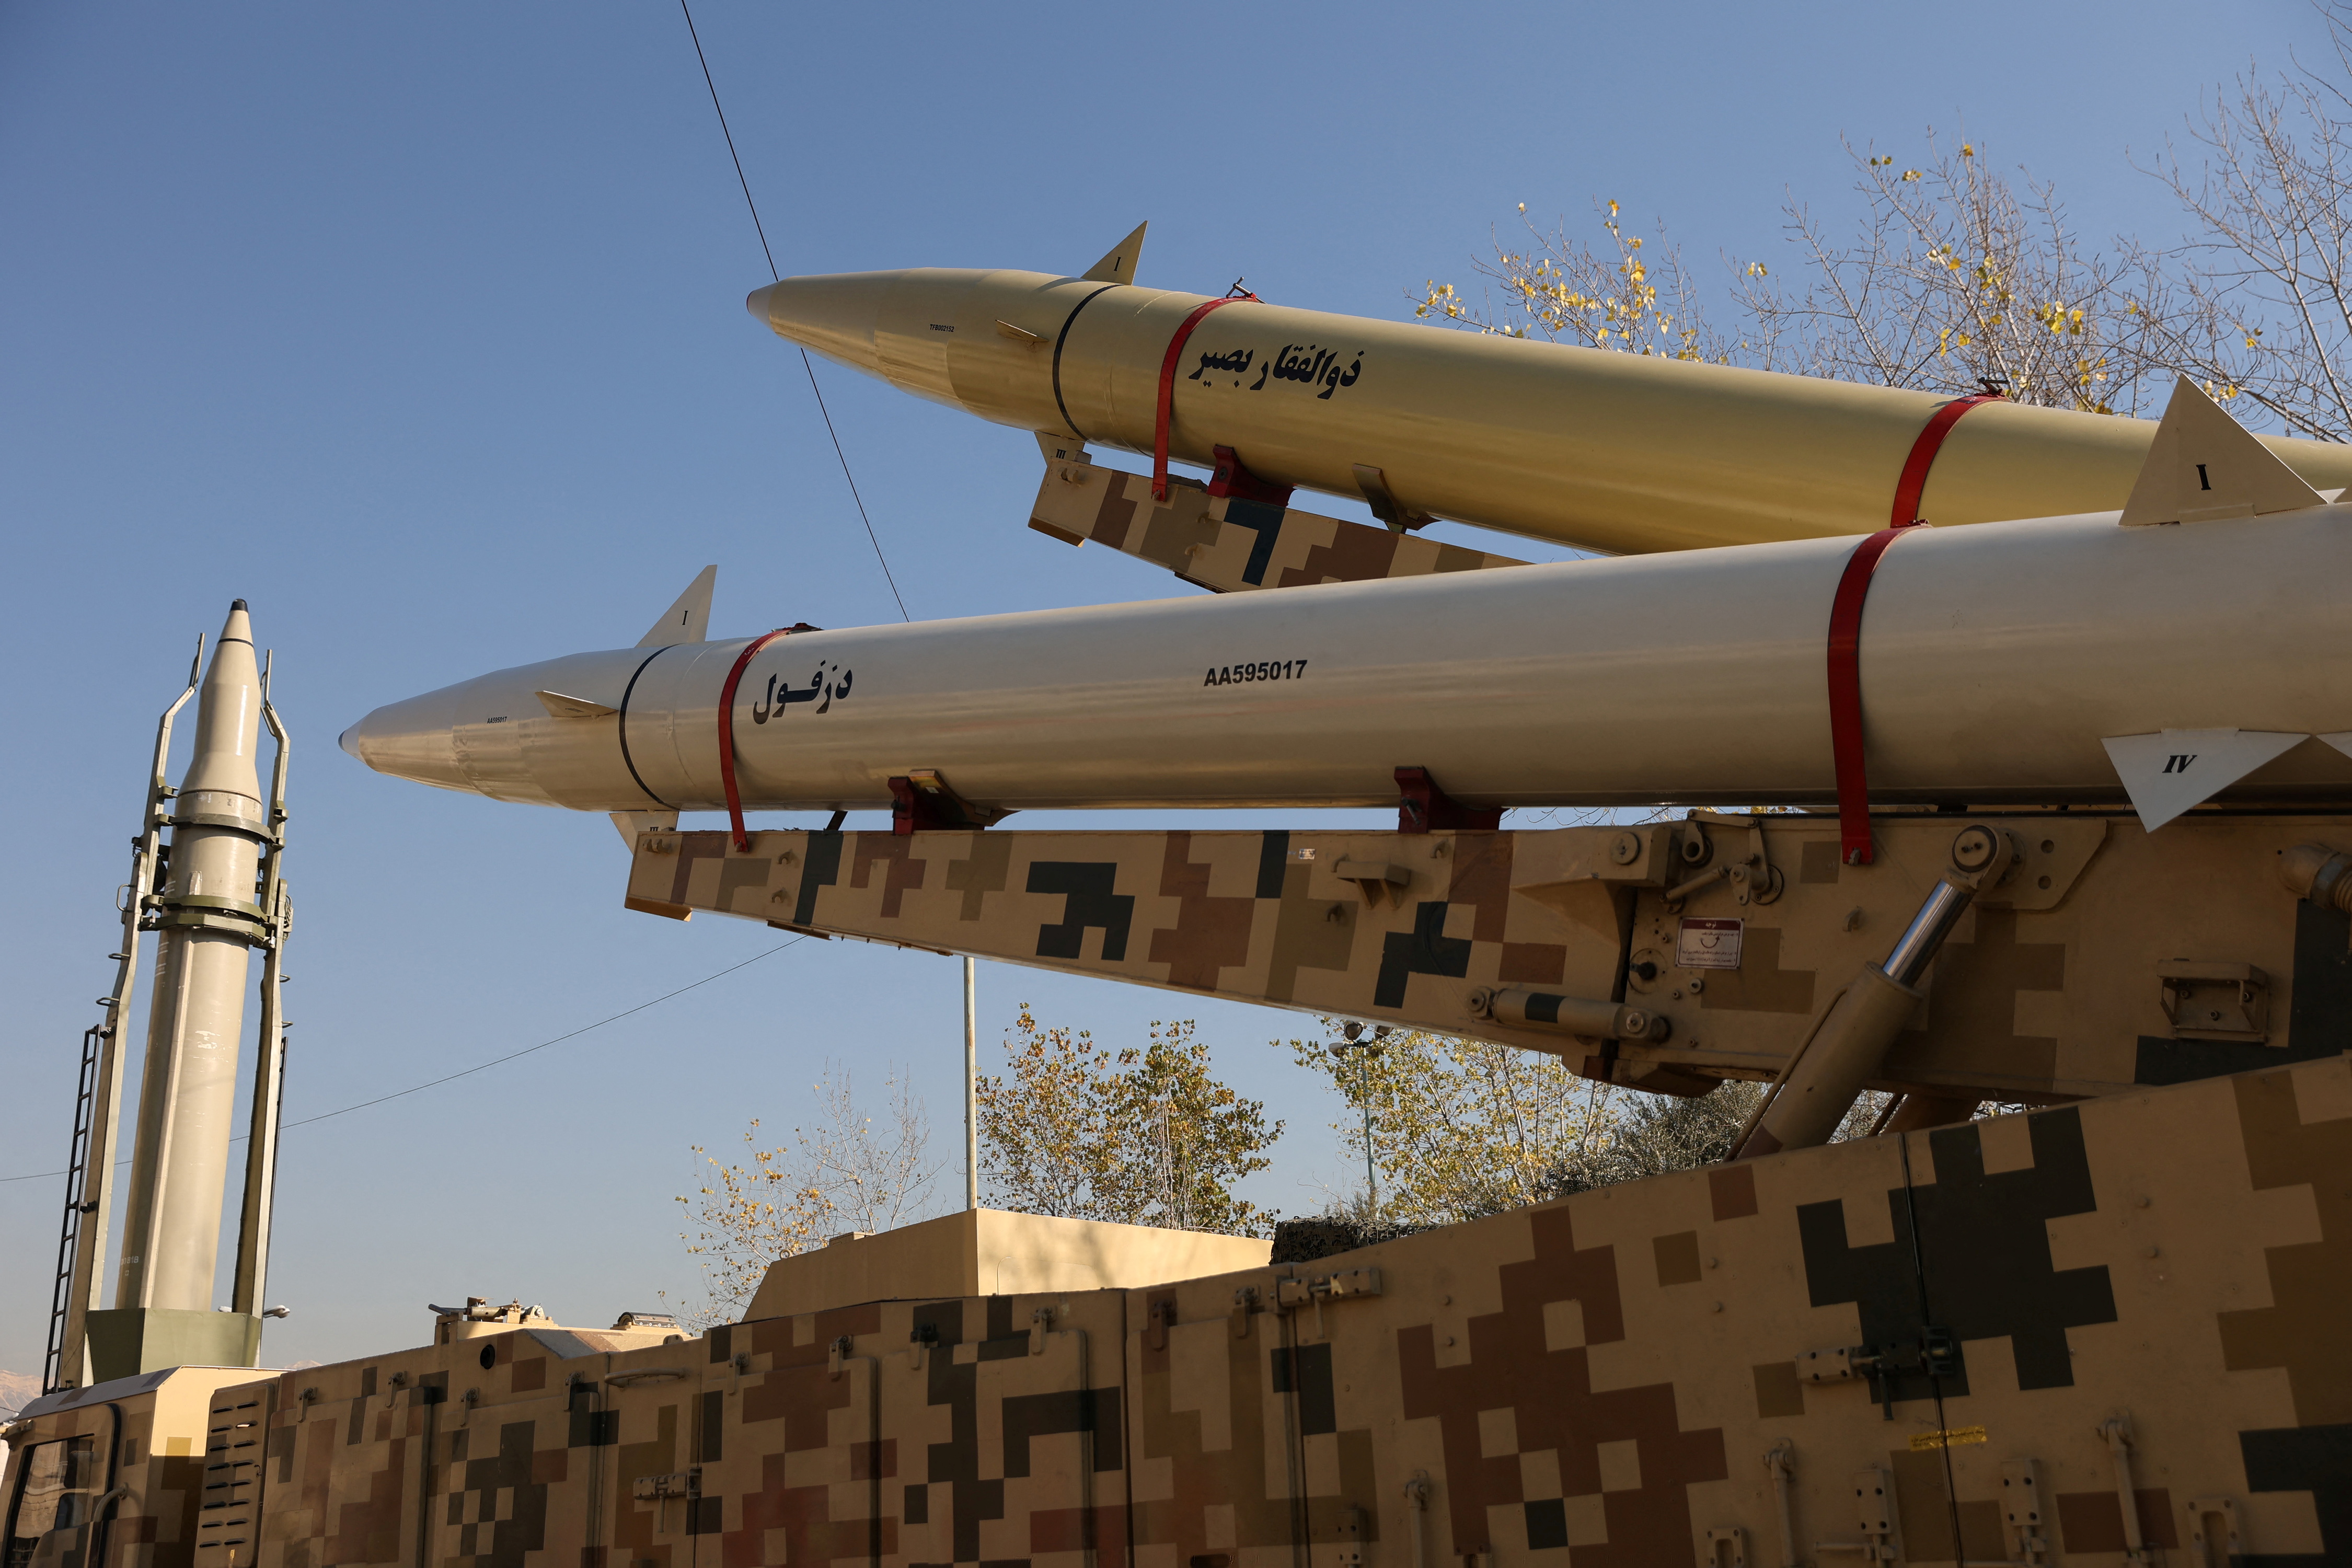 Misiles del tipo utilizado durante el ataque de represalia de Irán contra la base militar estadounidense Ayn al-Asad en 2020 se ven en exhibición en el Imam Khomeini Grand Mosalla en Teherán, Irán, el 7 de enero de 2022. Majid Asgaripour / WANA (Agencia de Noticias de Asia Occidental) vía REUTERS